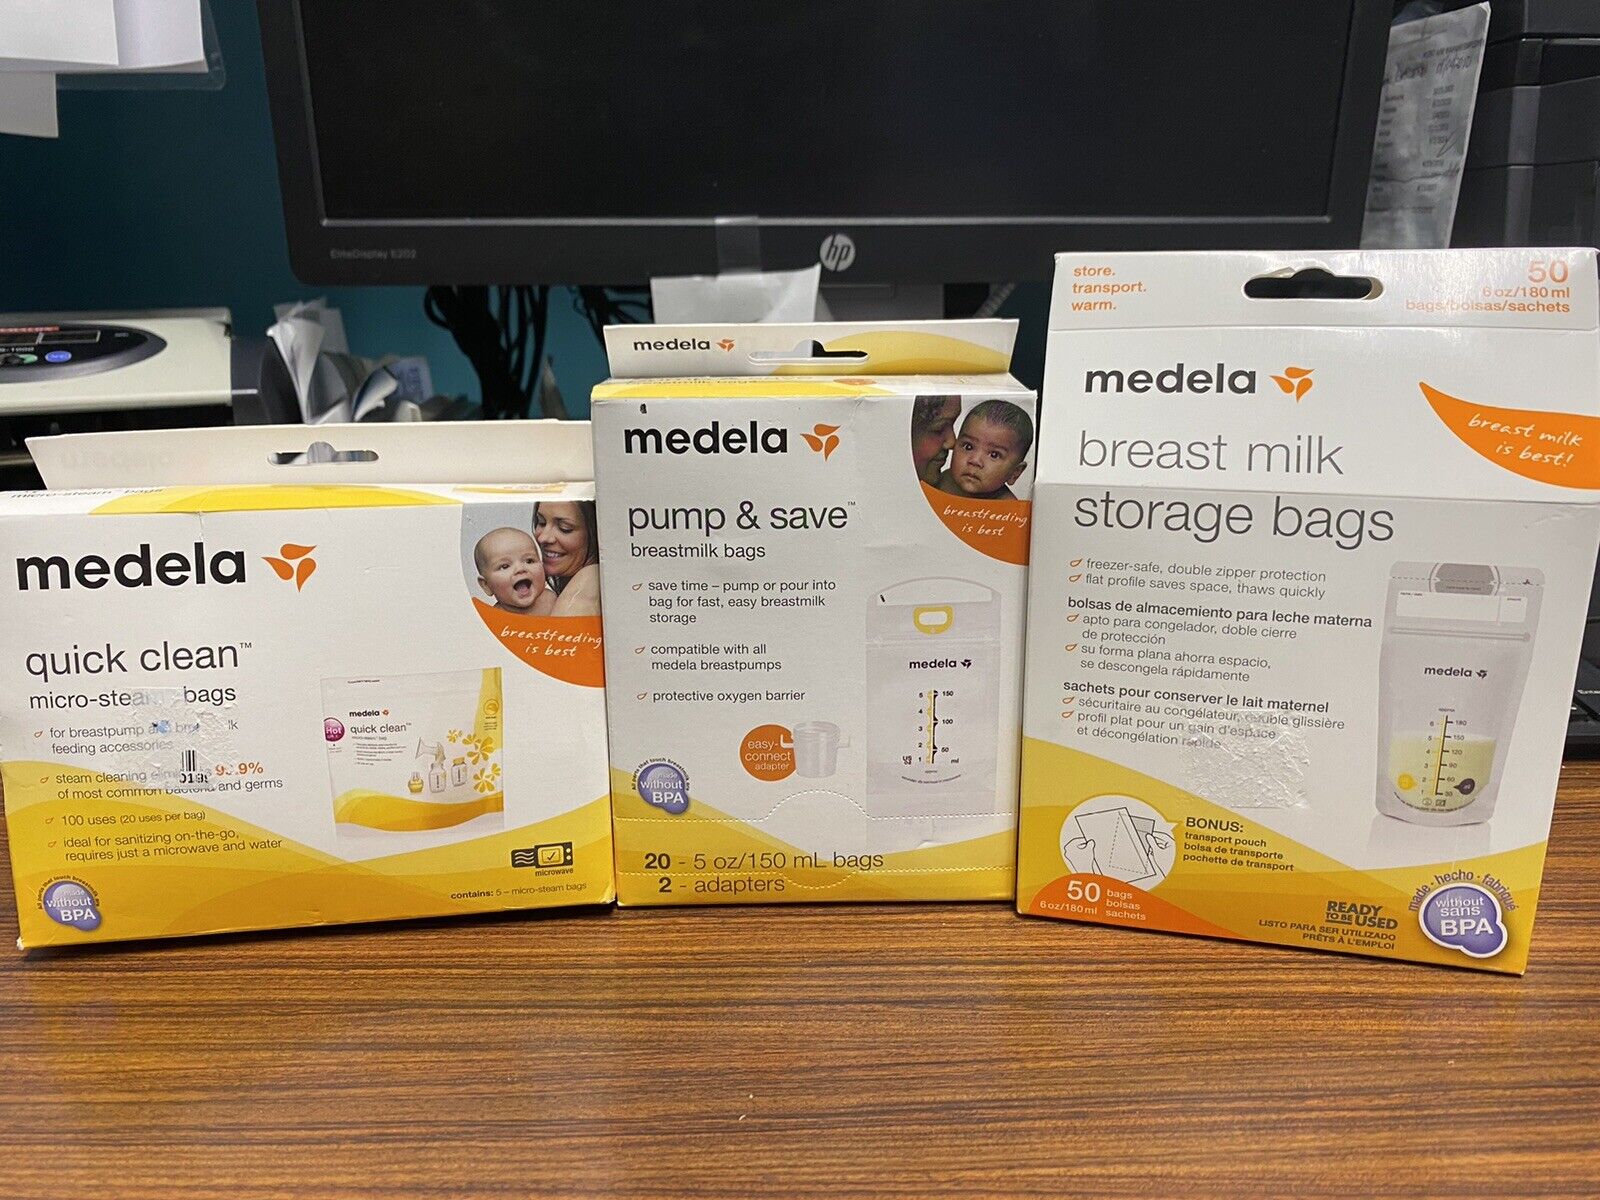 medela breast milk storage bags/ adapters/ micro-steam bags